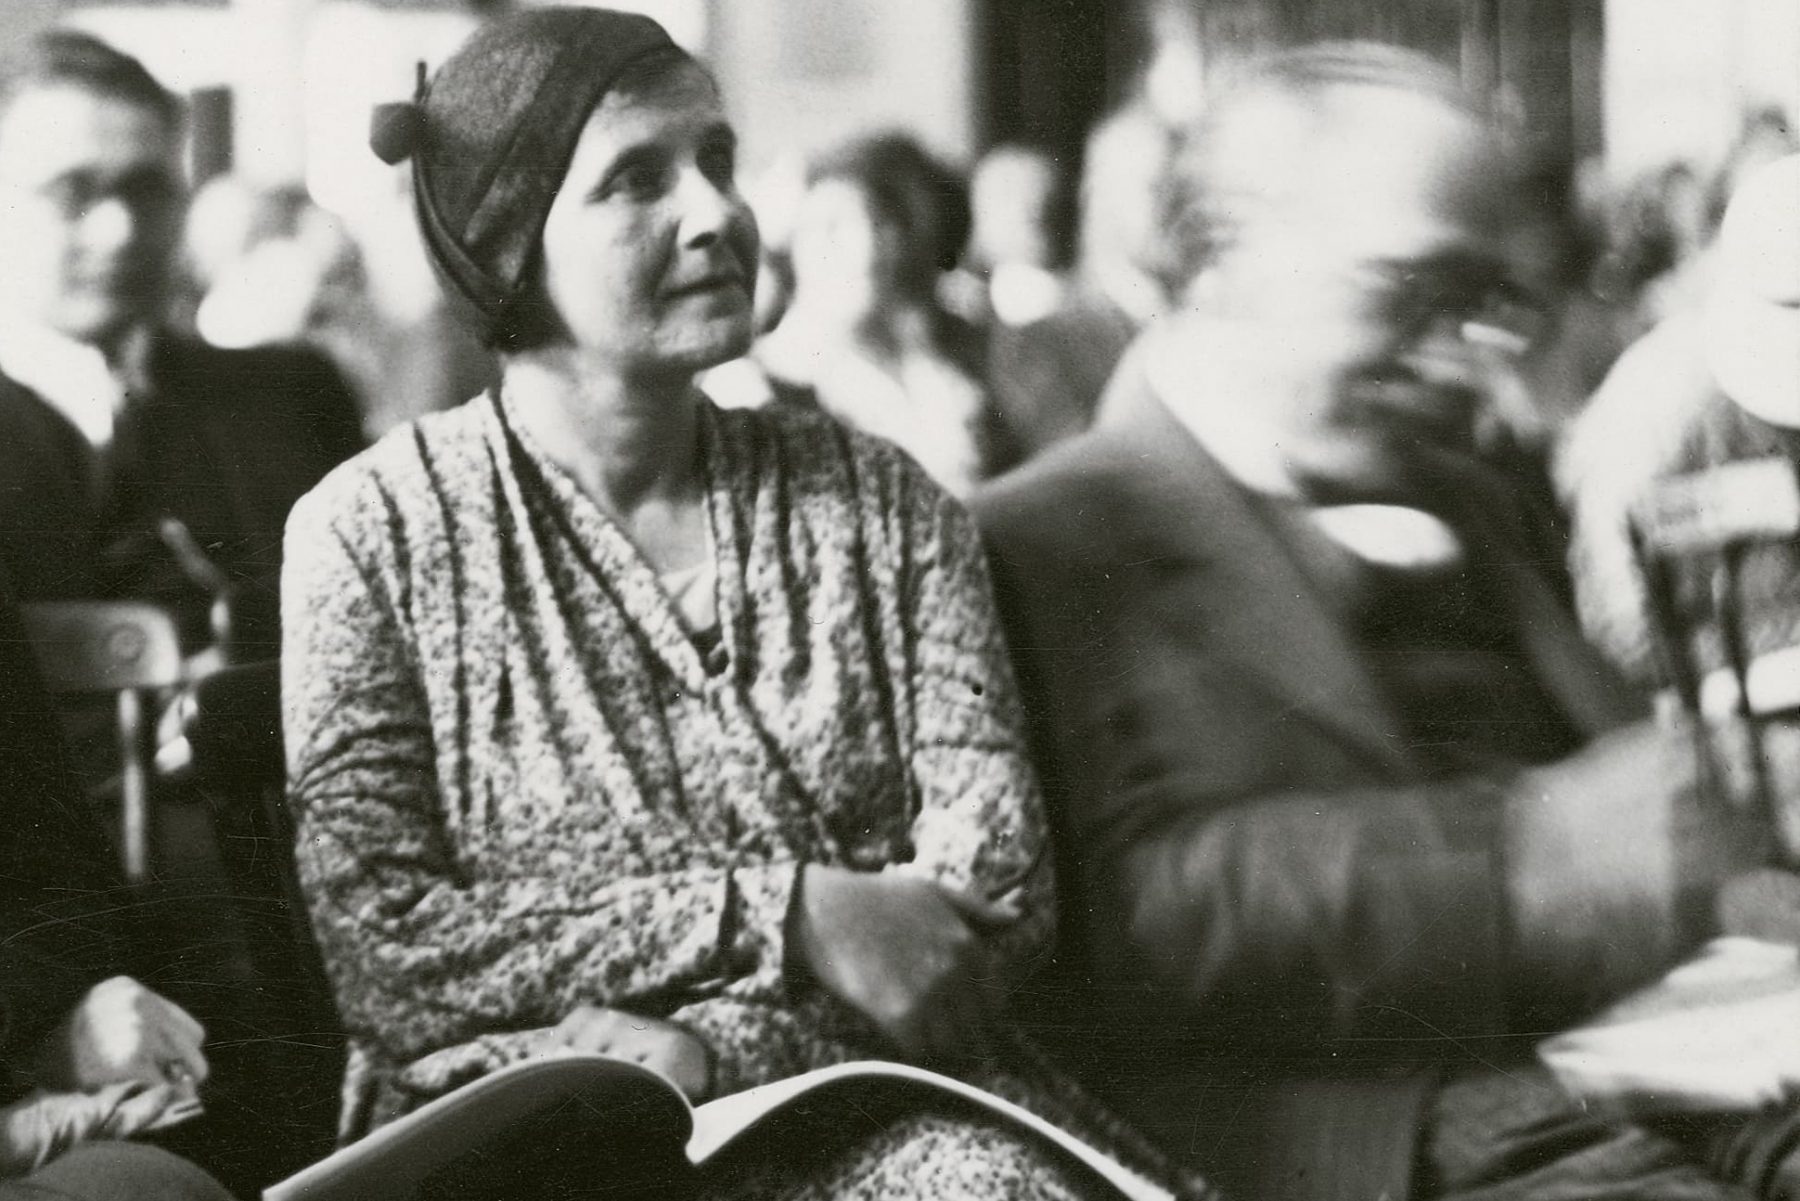 Historisches Schwarzweißfoto einer Frau mit einem aufgeschlagenen Buch auf dem Schoss in einem Raum mit vielen Personen.